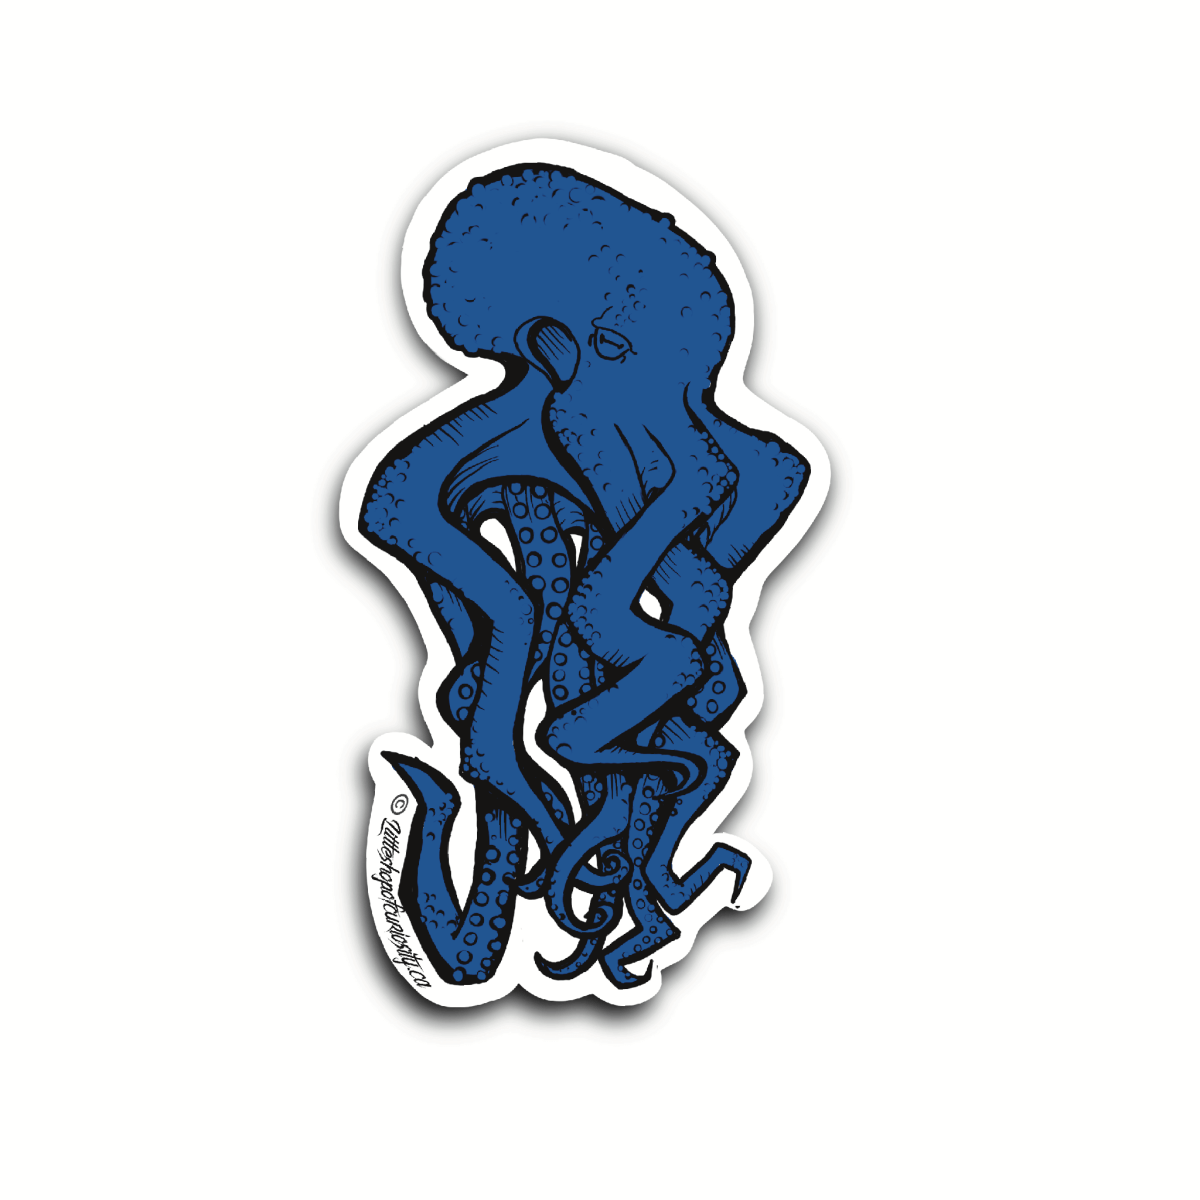 Graffiti Octopus Sticker - Colour Sticker - Little Shop of Curiosity